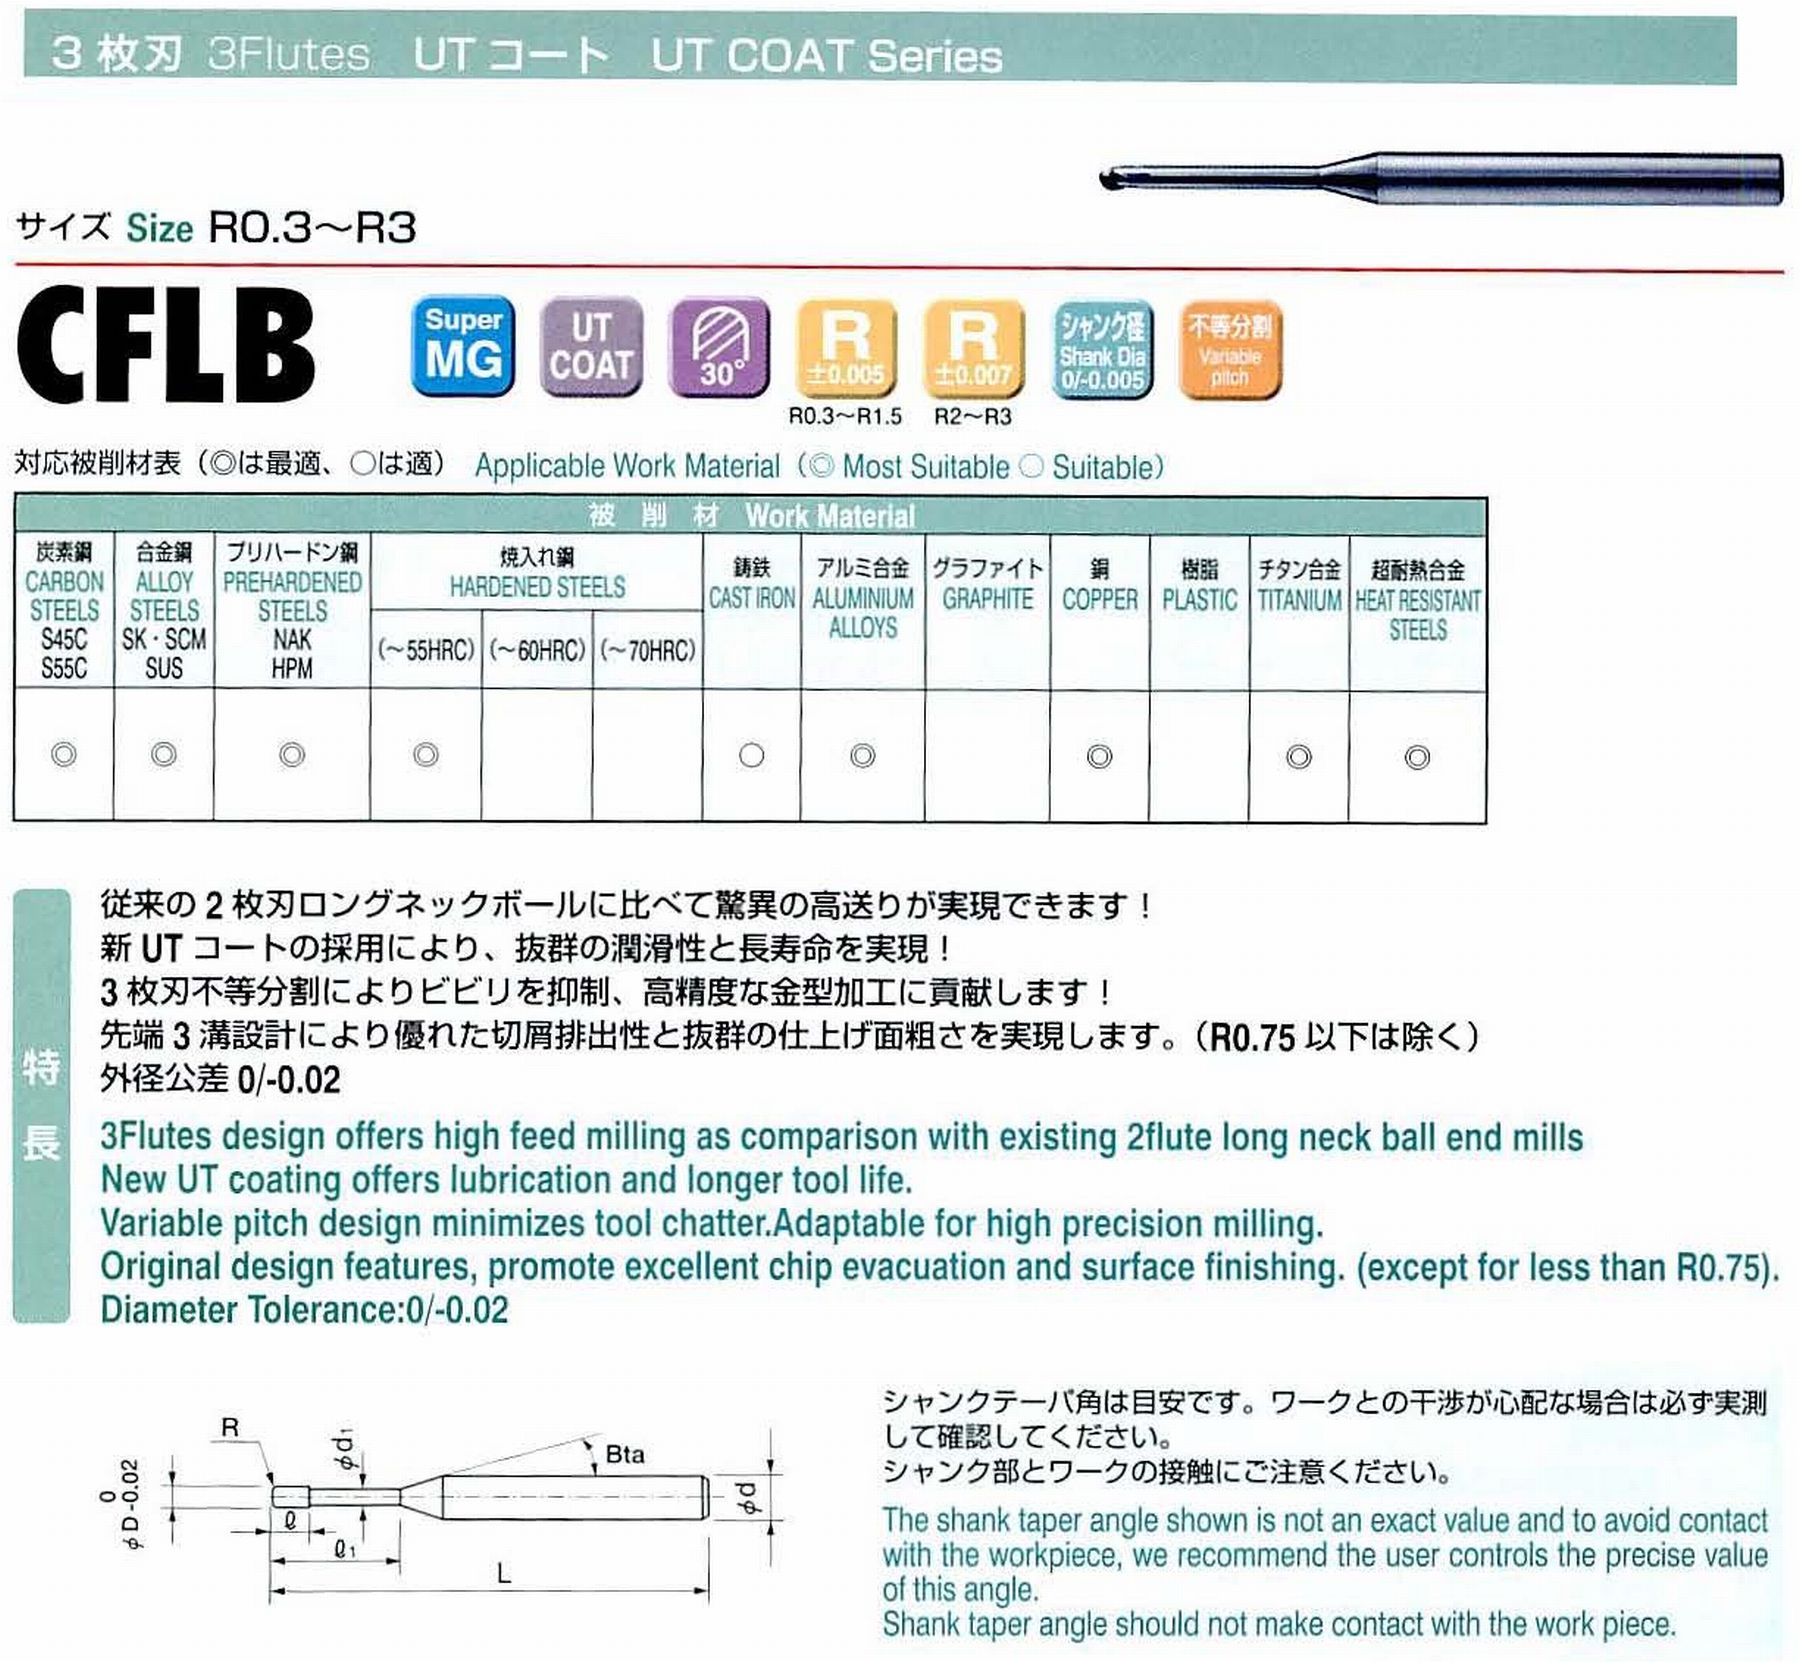 ユニオンツール 3枚刃 CFLB3010-025 ボール半径R0.5 有効長2.5 刃長0.8 首径0.96 シャンクテーパ角16° 全長50 シャンク径4